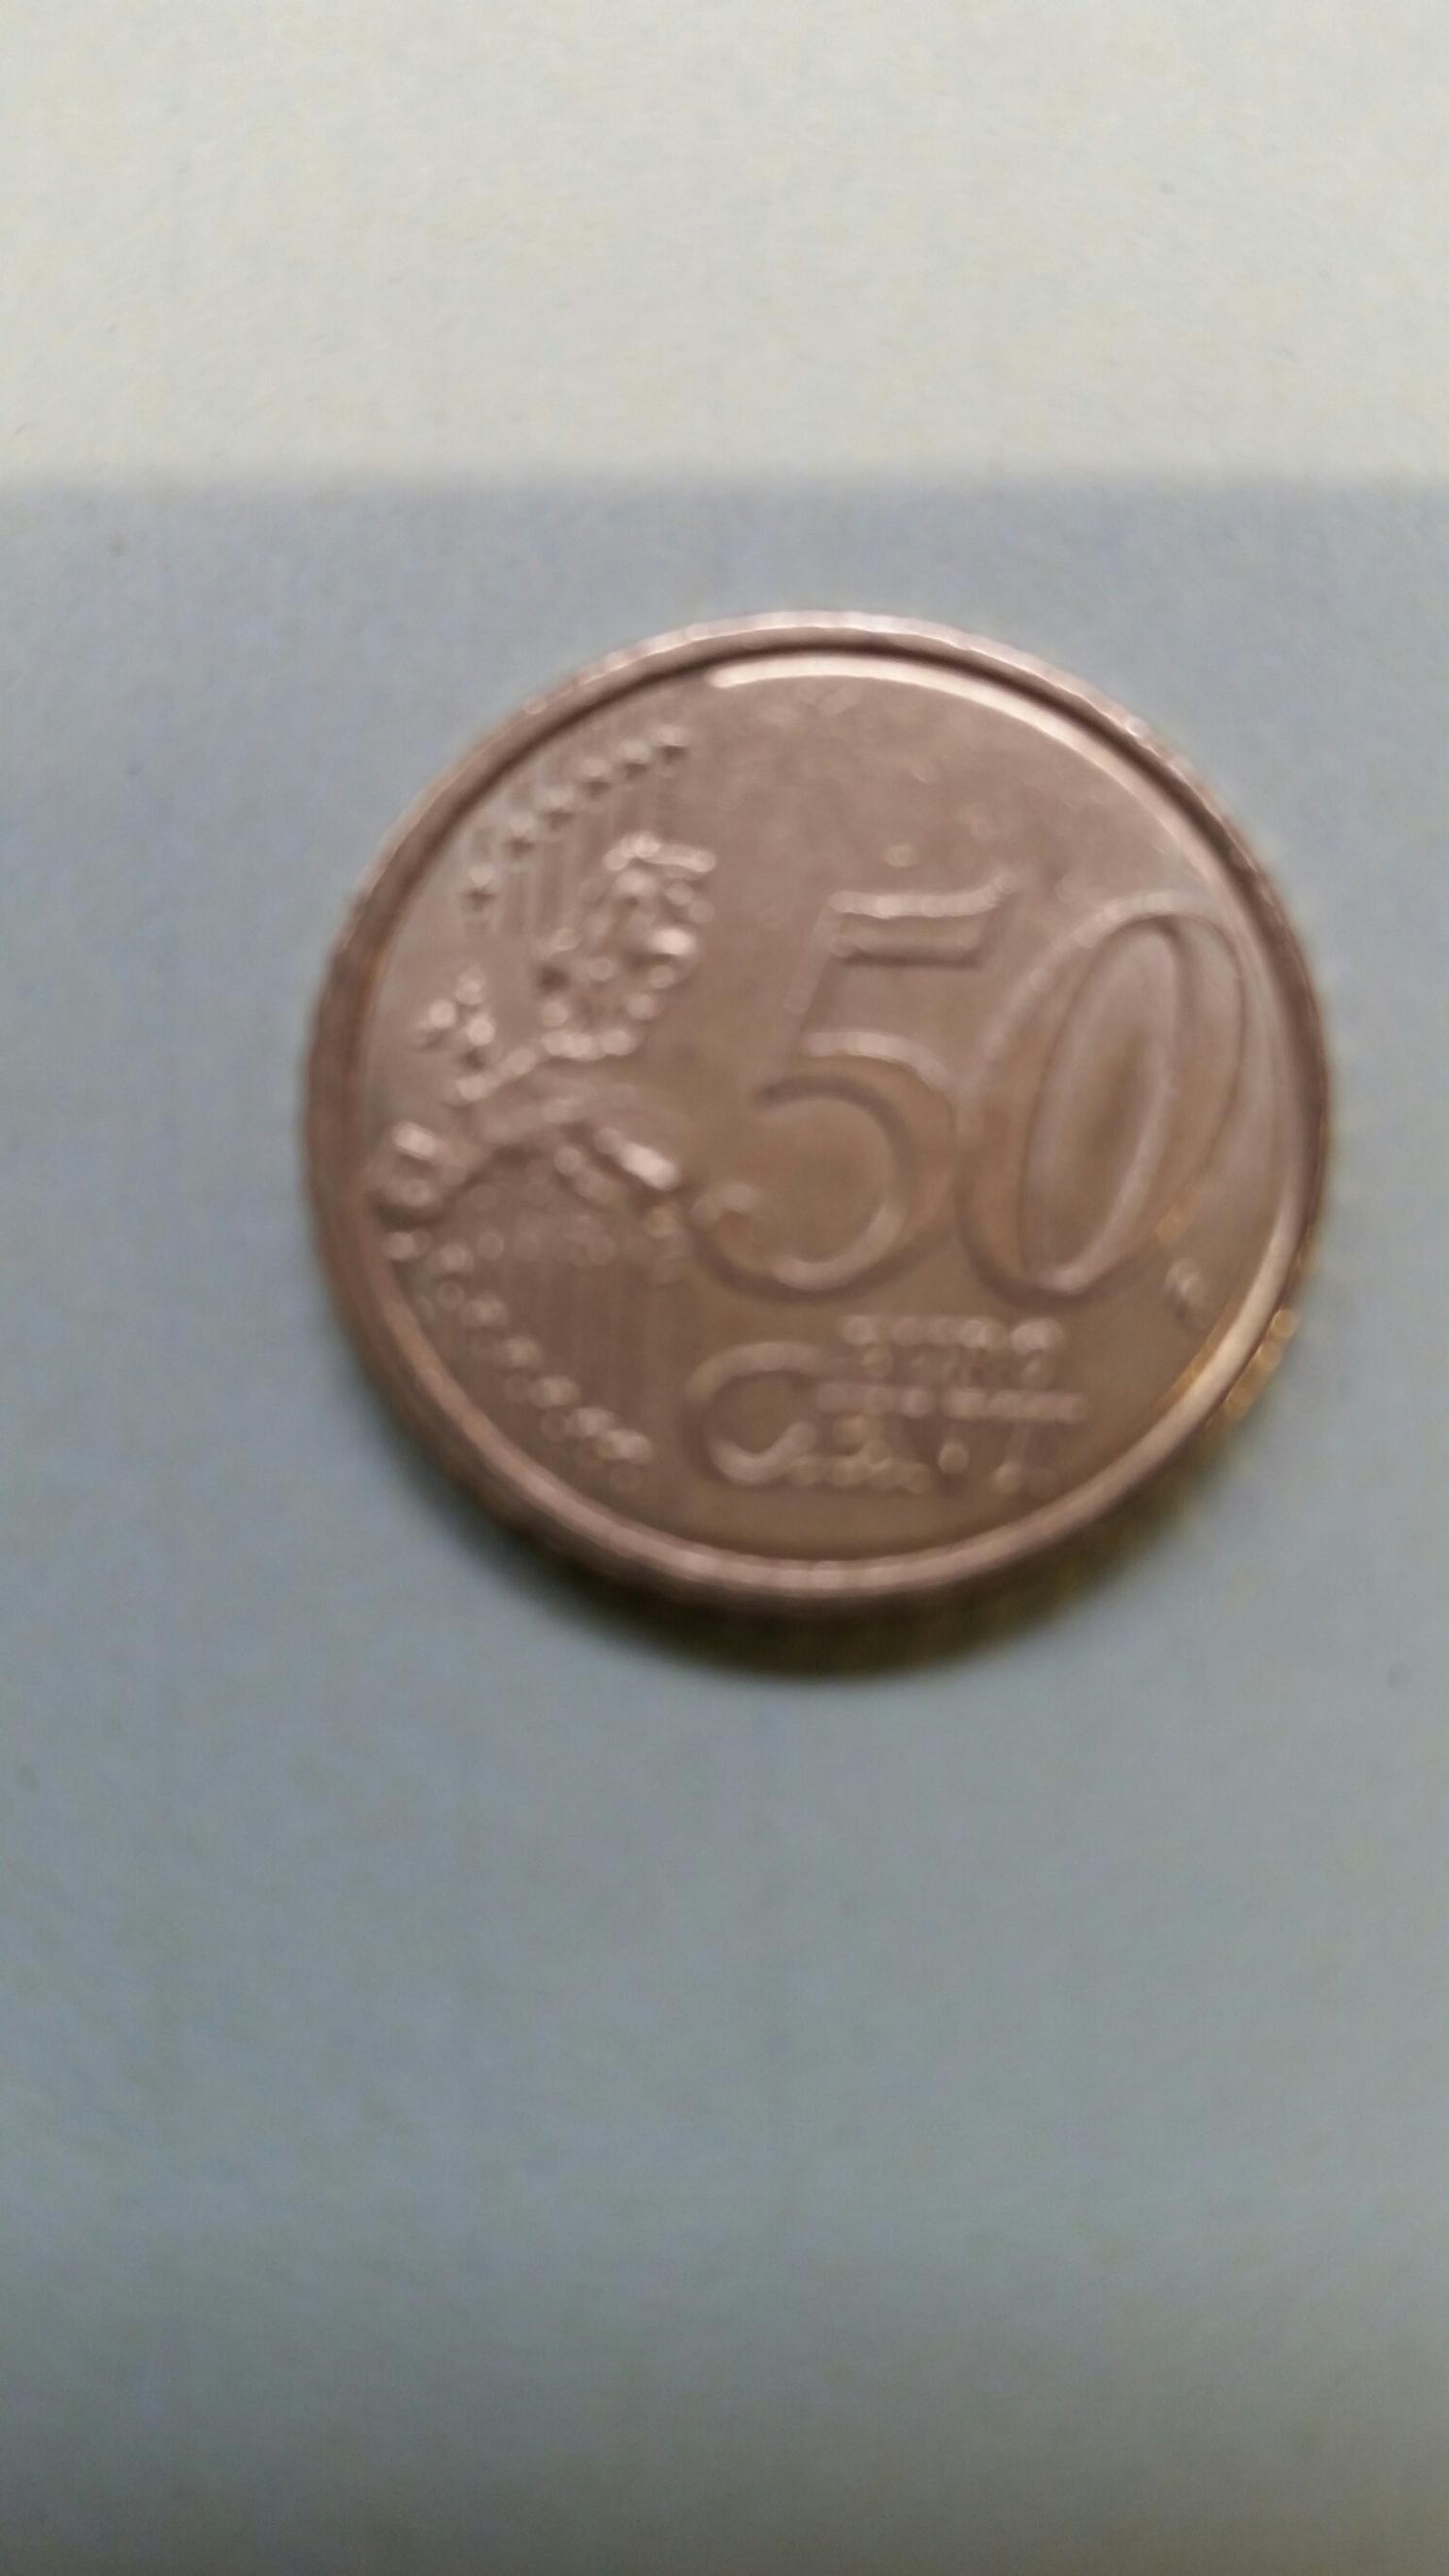 Seltene 50 cent münzen